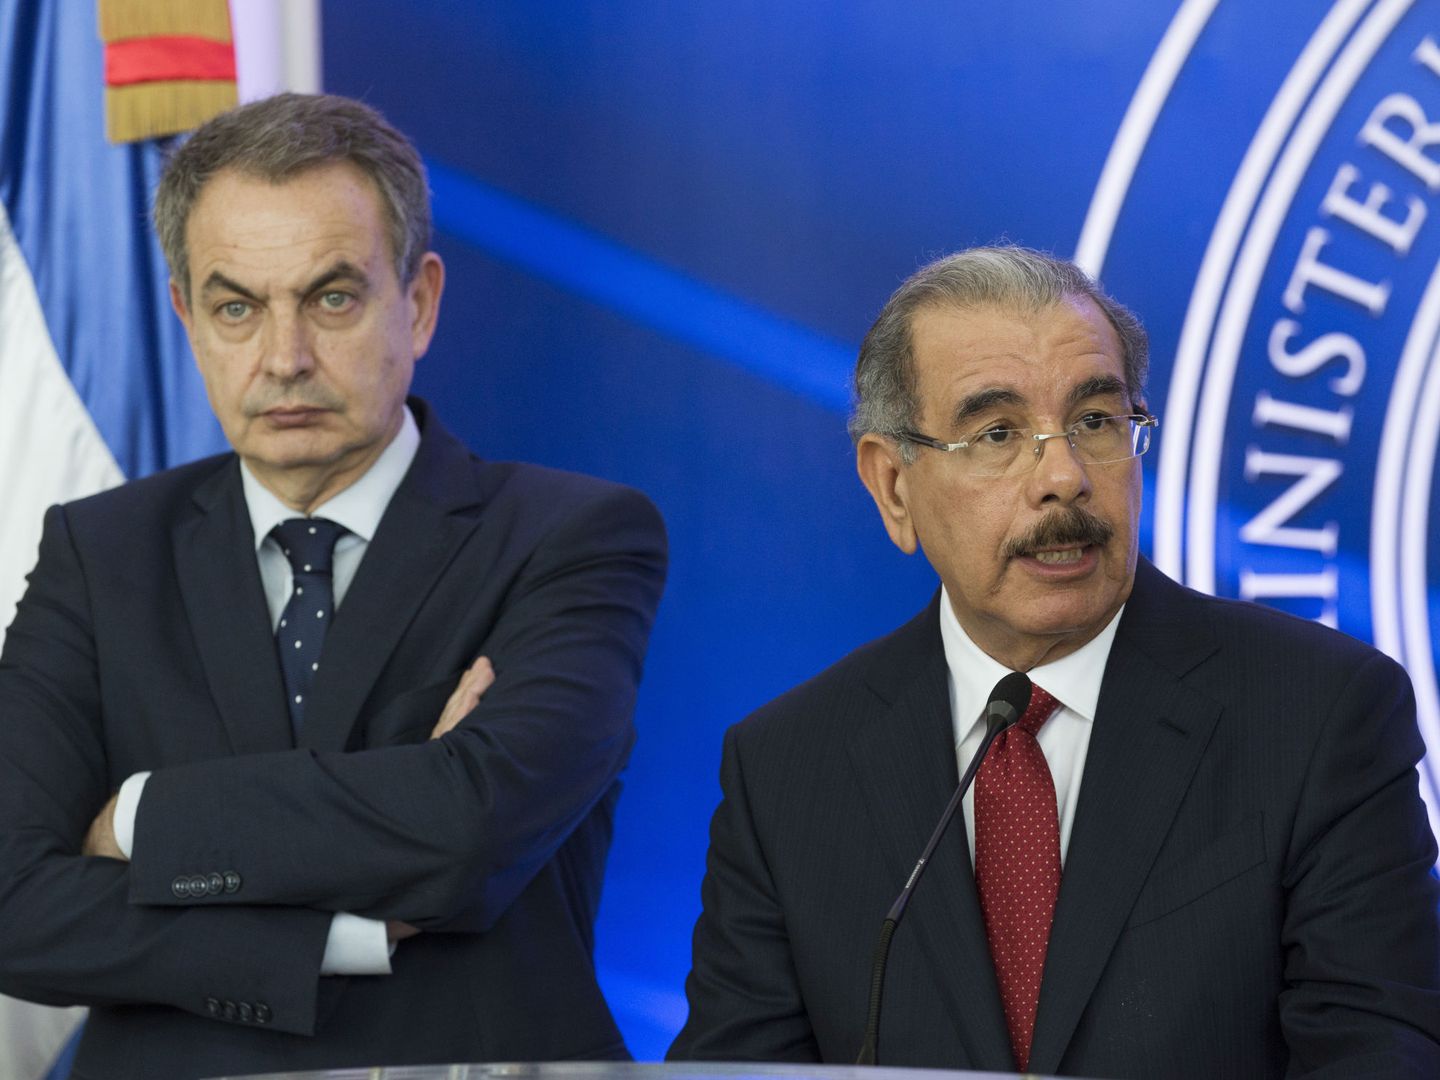 El presidente dominicano, Danilo Medina (d),con Zapatero, durante una rueda de prensa al término de un encuentro con la oposición el pasado 7 de febrero en Santo Domingo. Medina informó de que el diálogo entre el Gobierno y la oposición de Venezuela entró en un 'receso indefinido' al no llegarse a un acuerdo definitivo. (EFE)